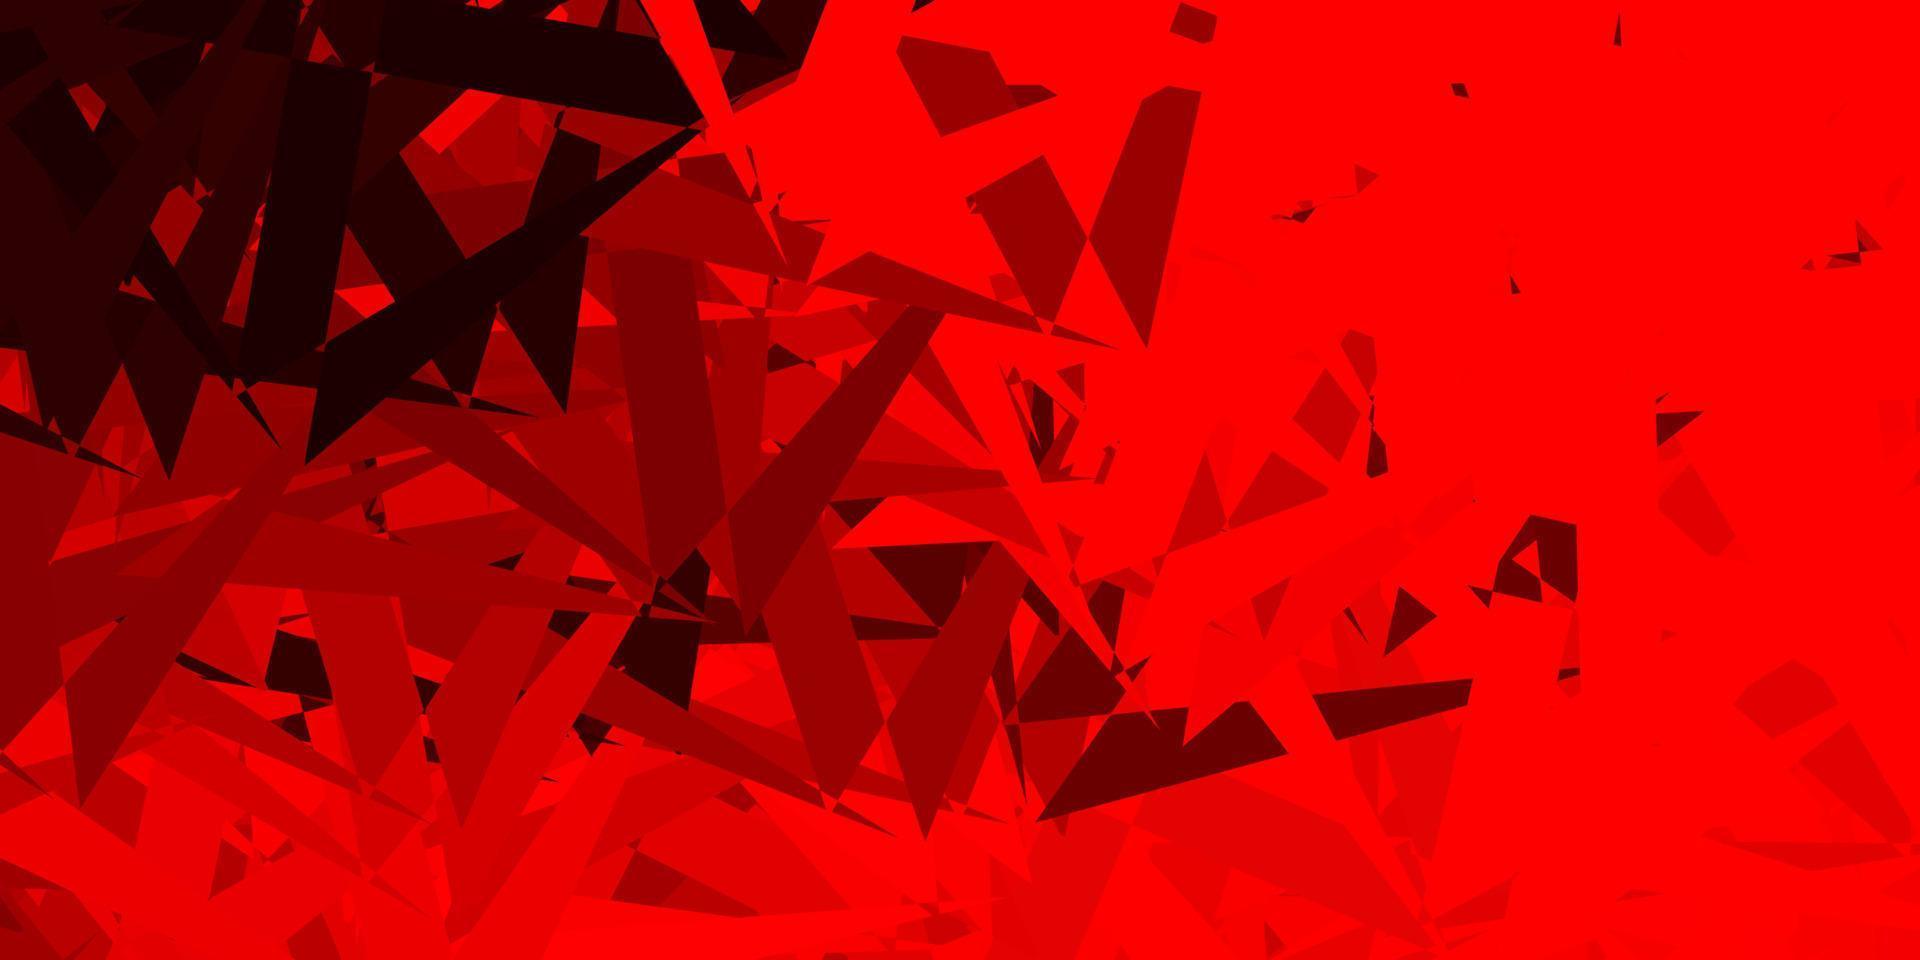 fond de vecteur rouge foncé avec des triangles.